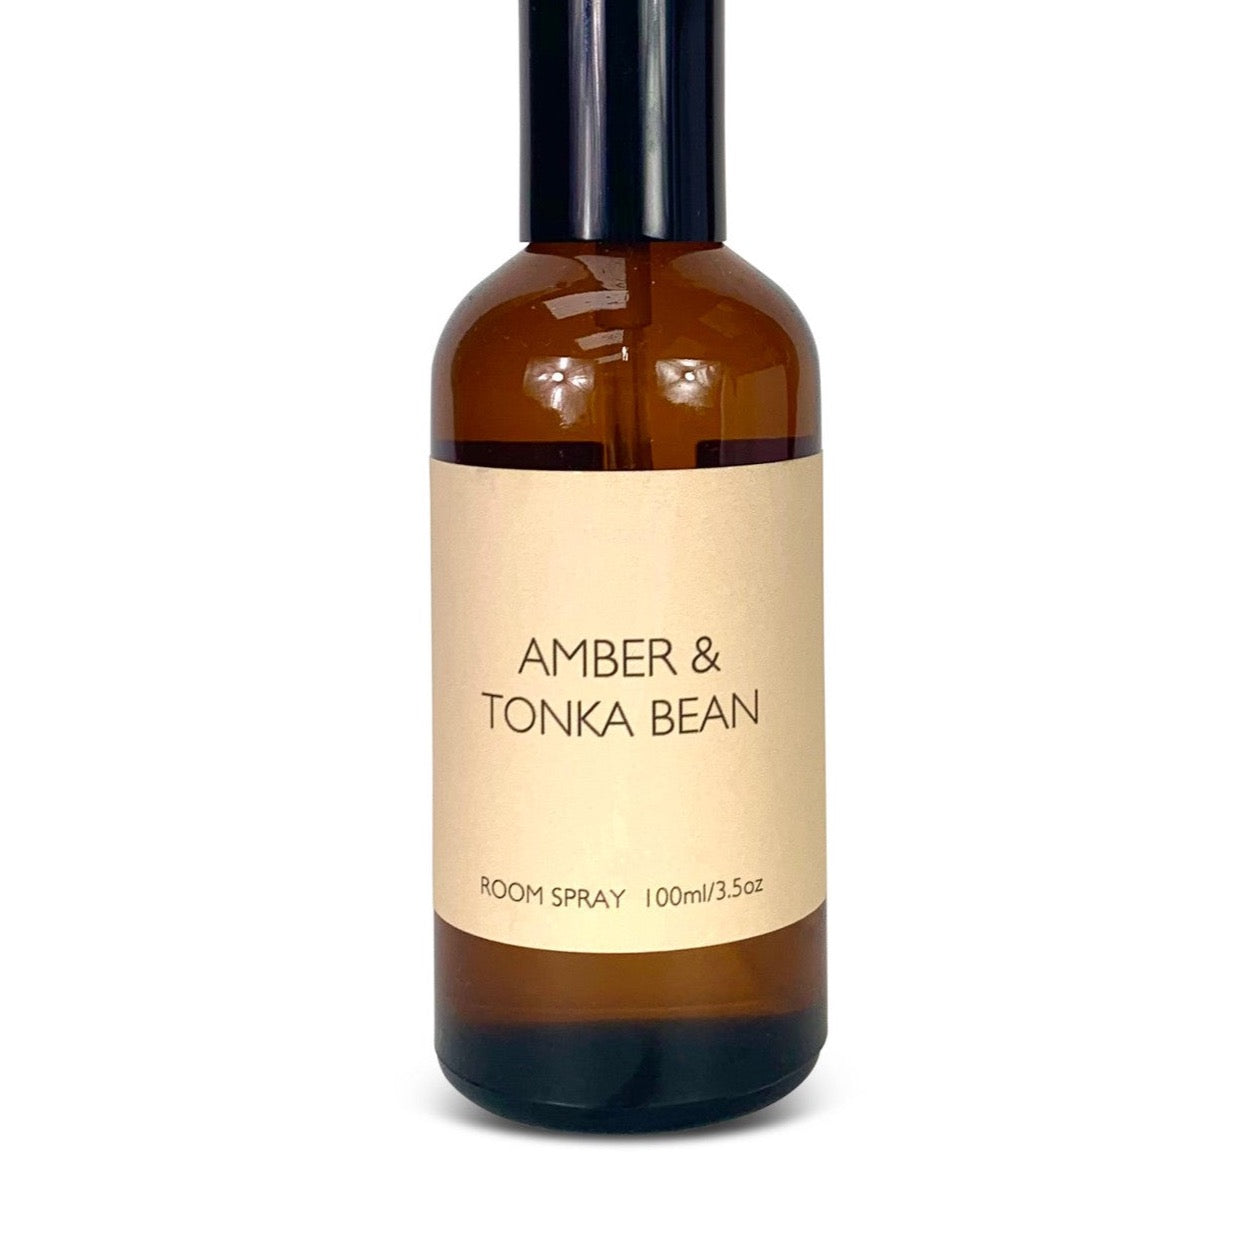 Amber & Tonka Bean Room Spray